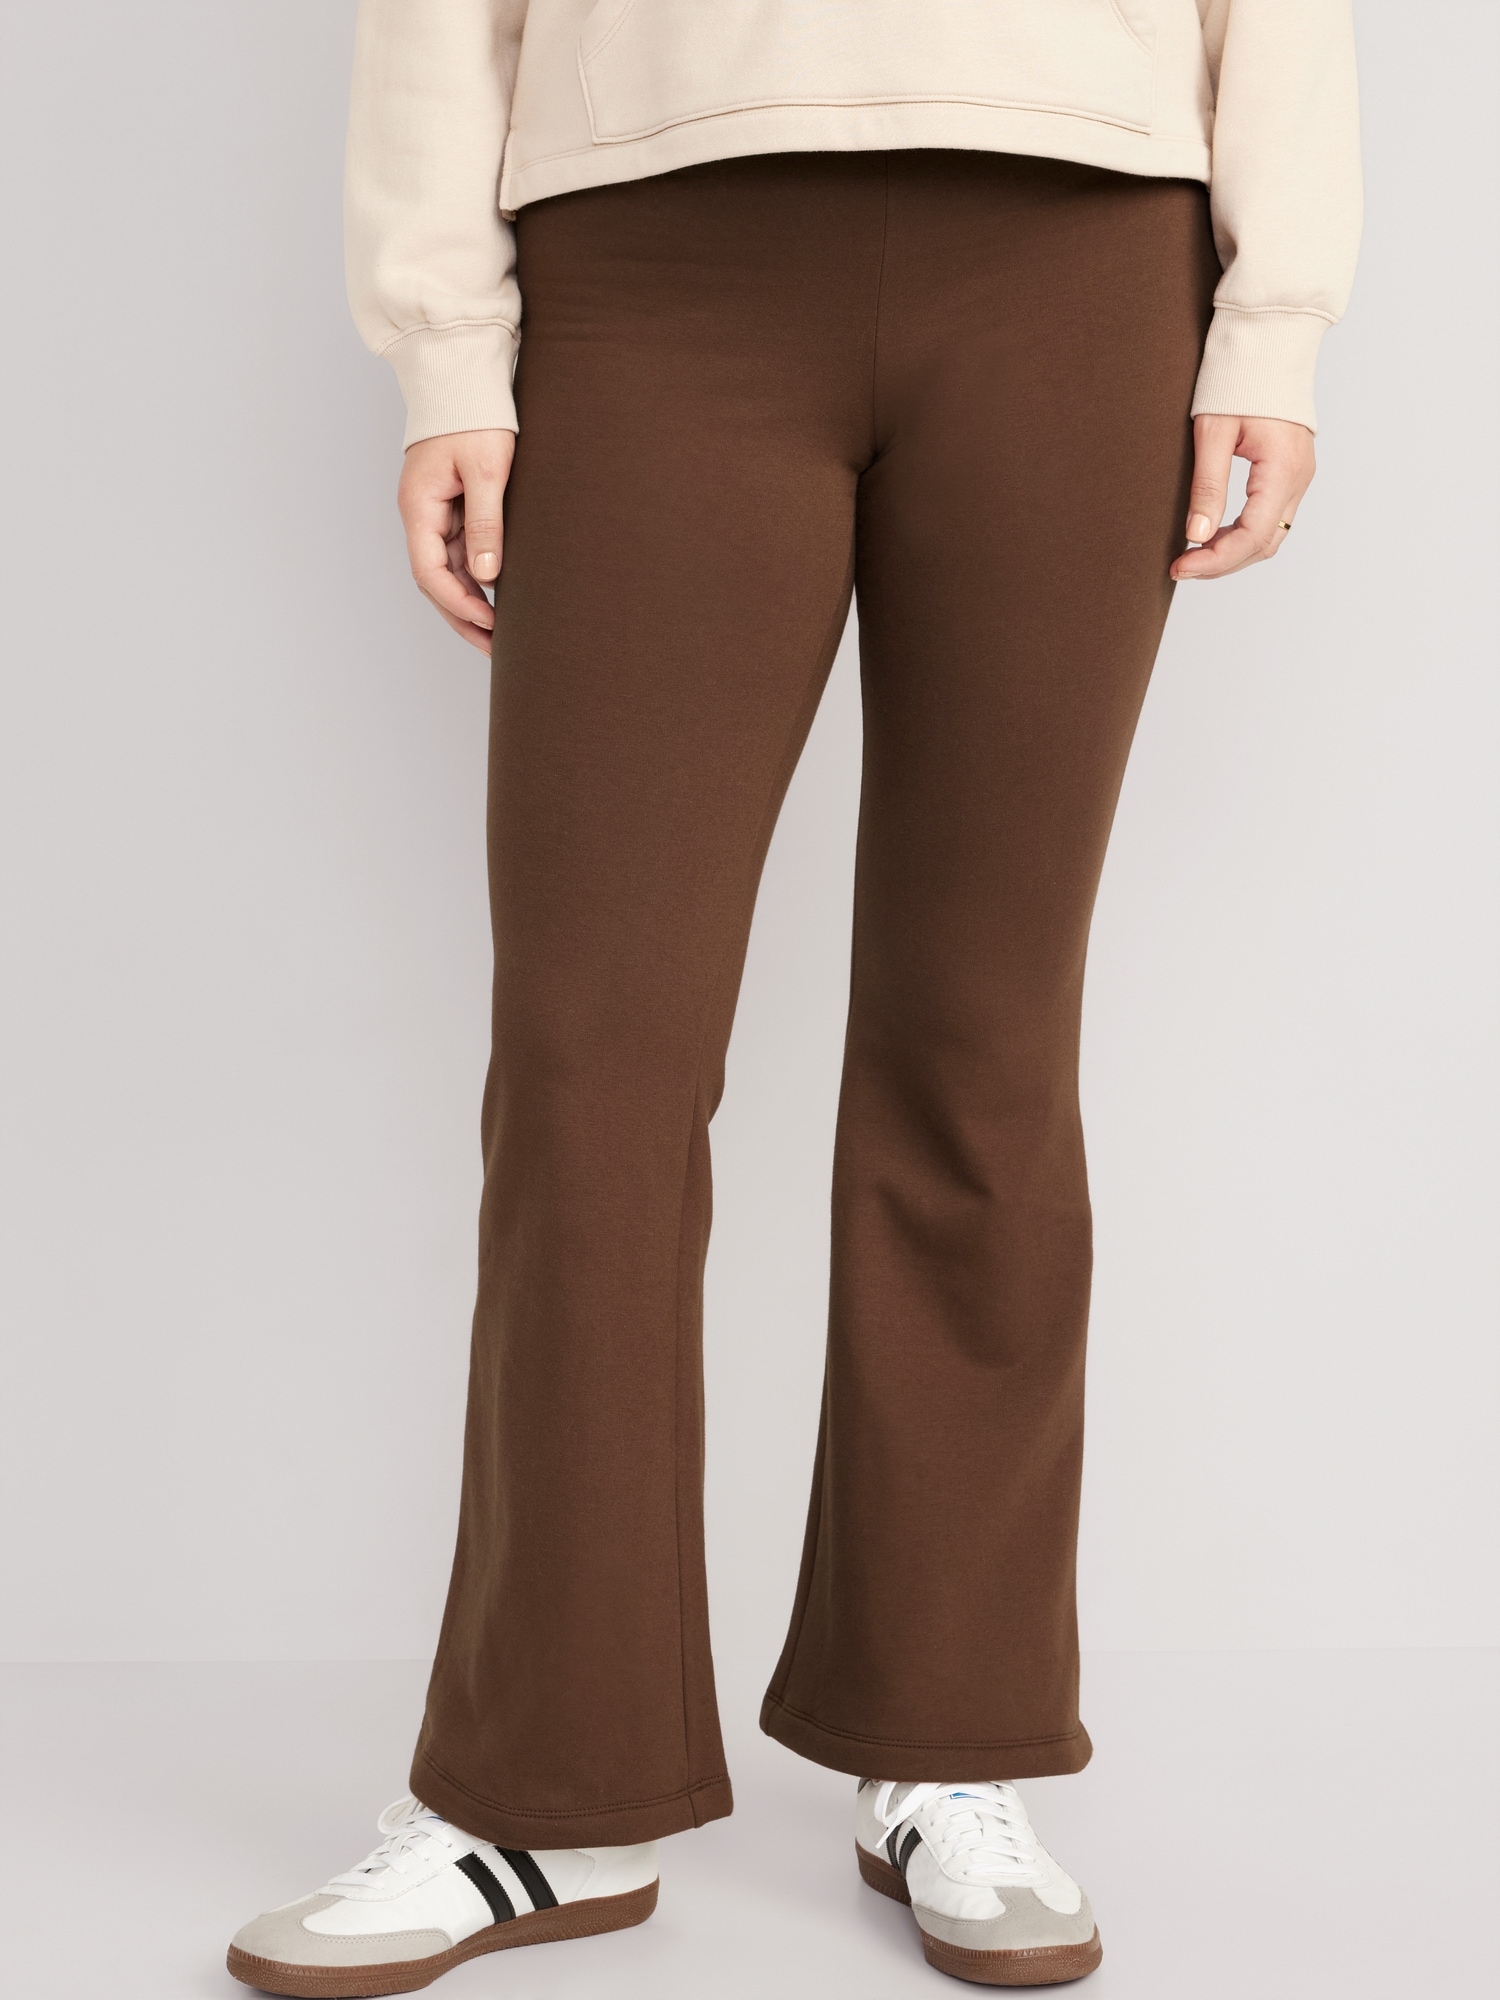 Brown leggings fleece lined  Leggings are not pants, Brown